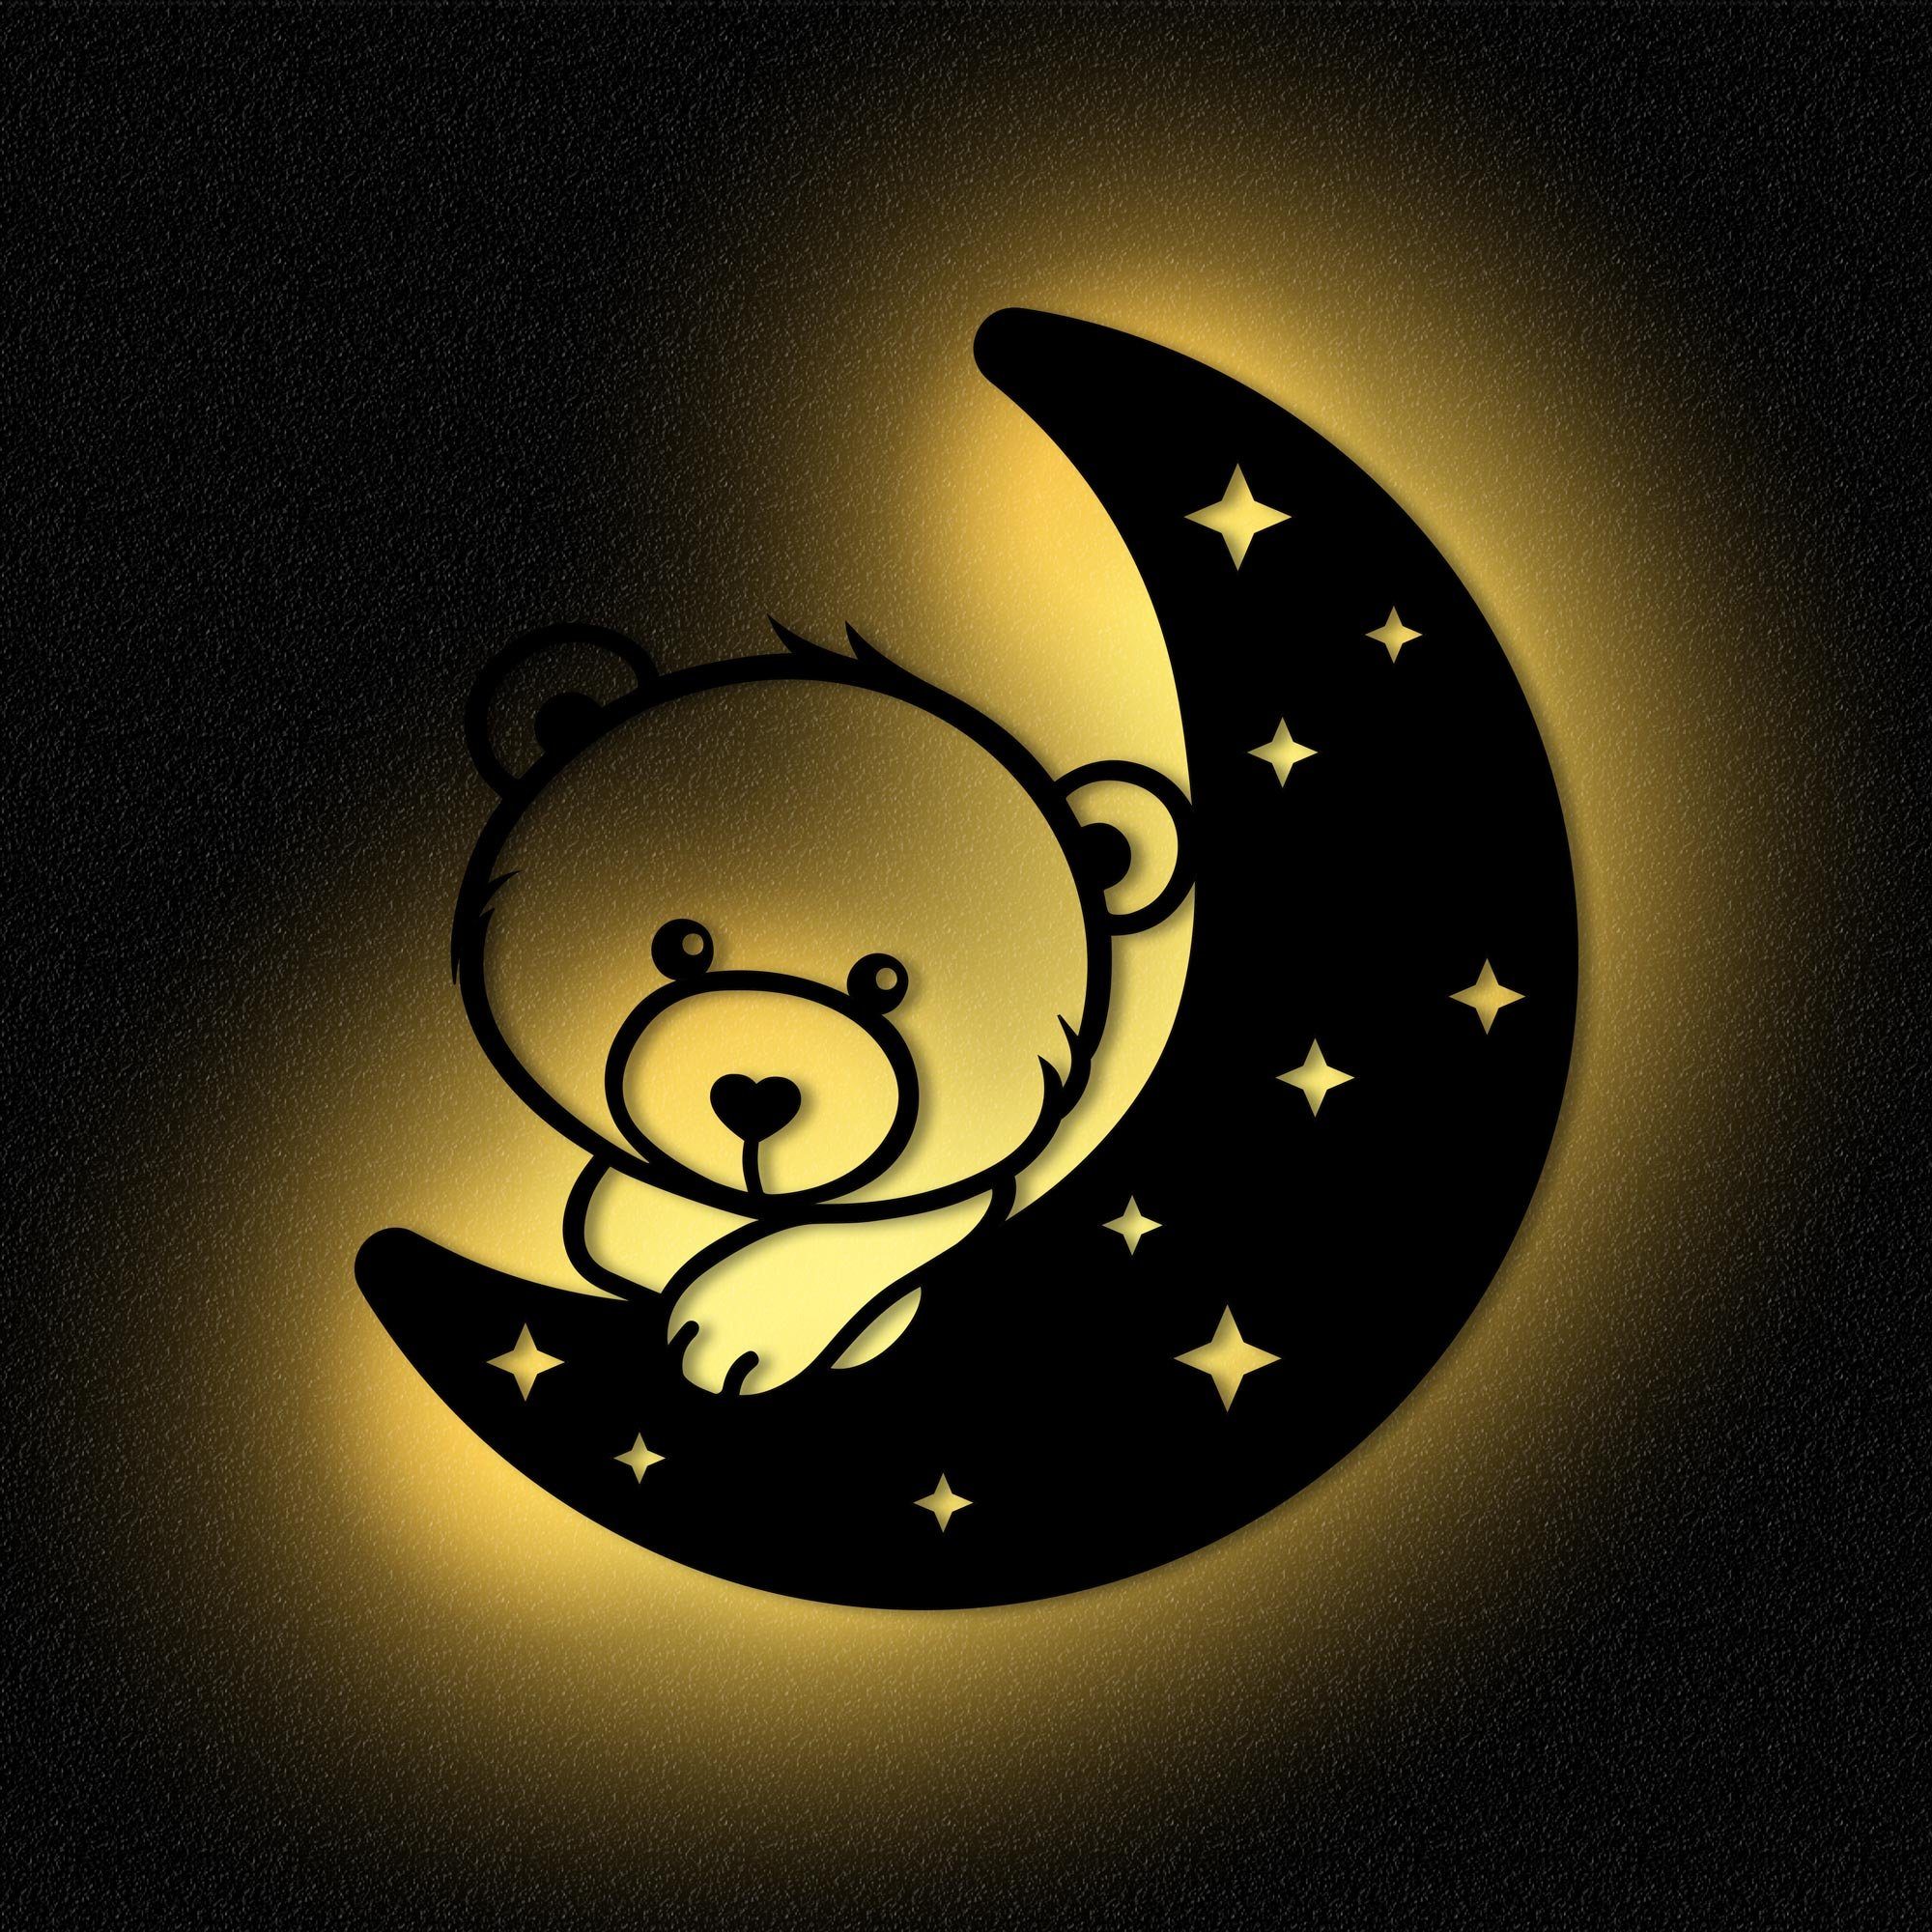 Namofactur LED Kinder MDF Holz, LED I fest Teddy Mond Nachtlicht integriert, Nachtlicht Wandlampe Kinderzimmer Warmweiß